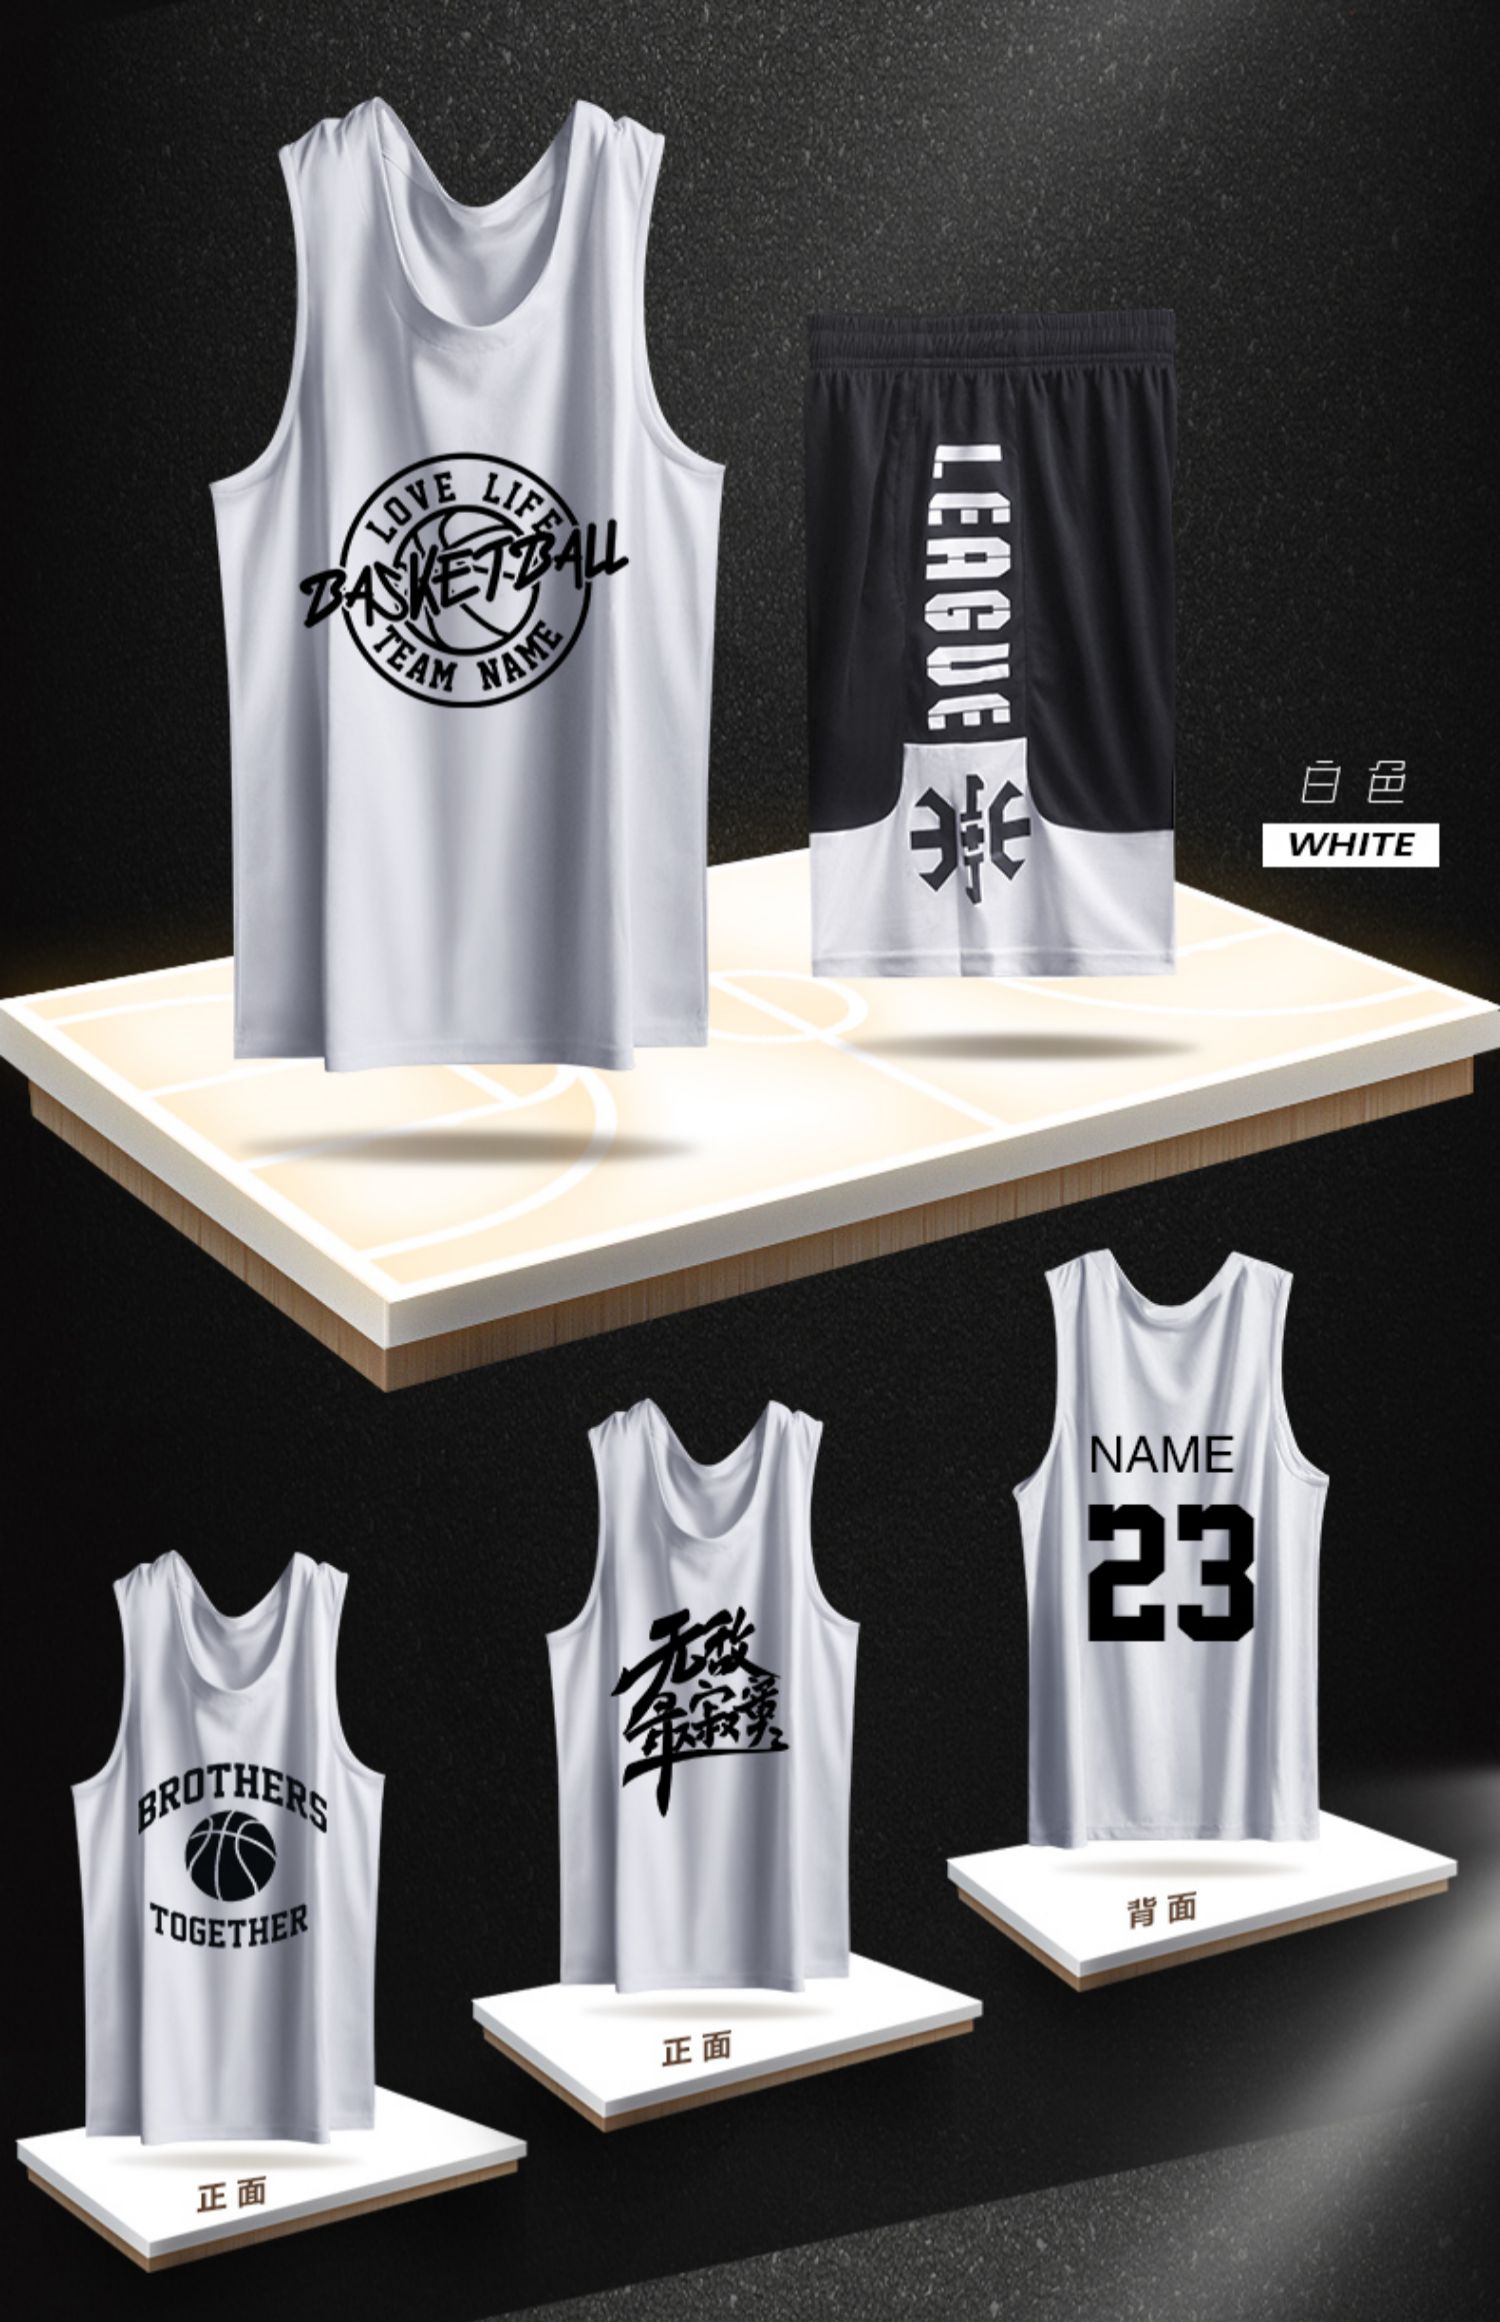 图案 101黑色 品牌: 拾荒男孩 商品名称:2021卡尔美同款篮球服背心